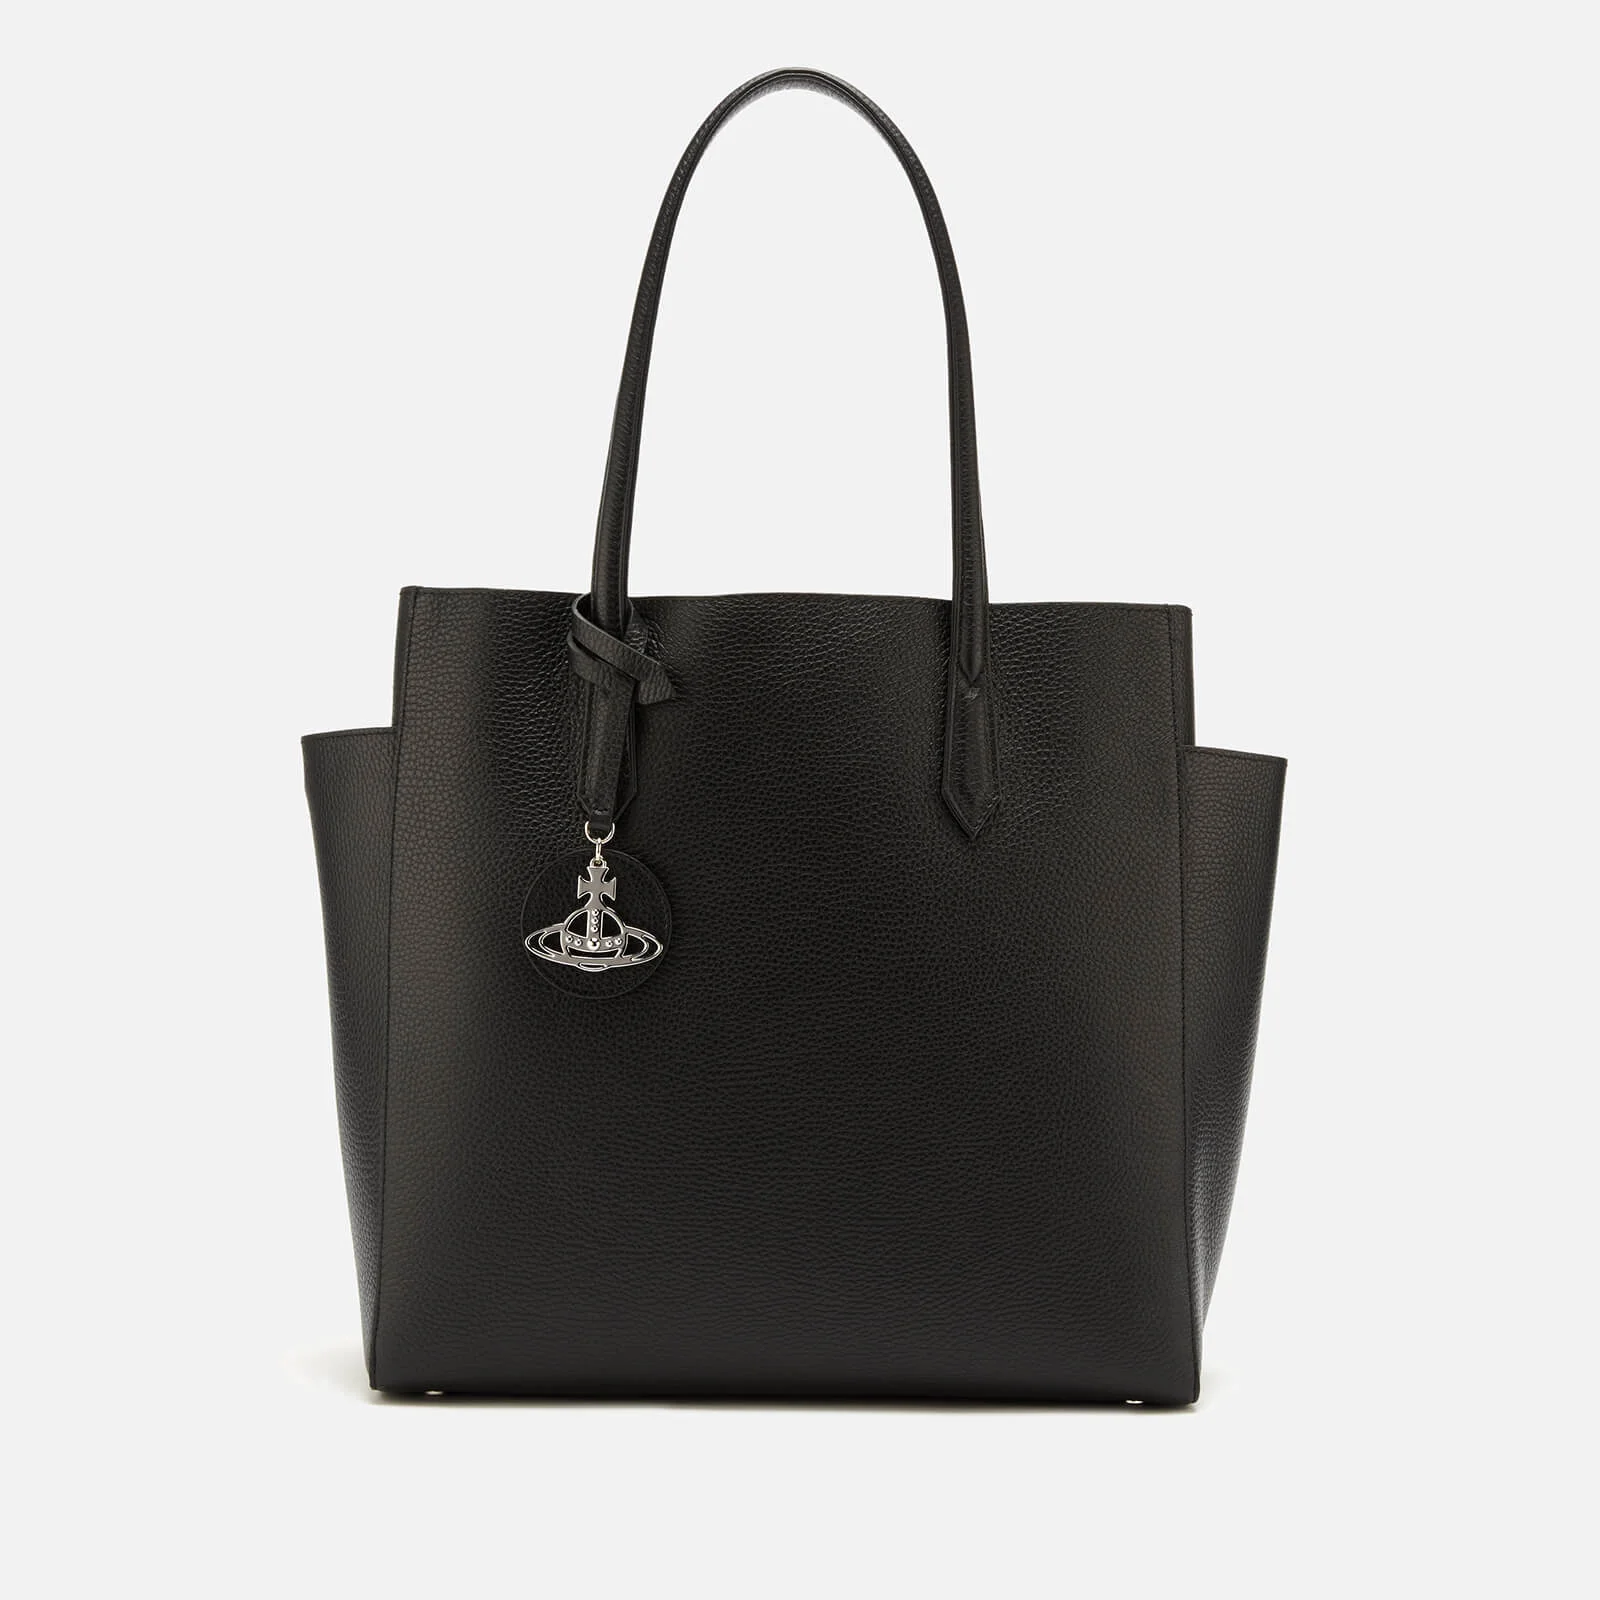 Vivienne Westwood Women's Rachel Large Shopper Bag - Black Image 1